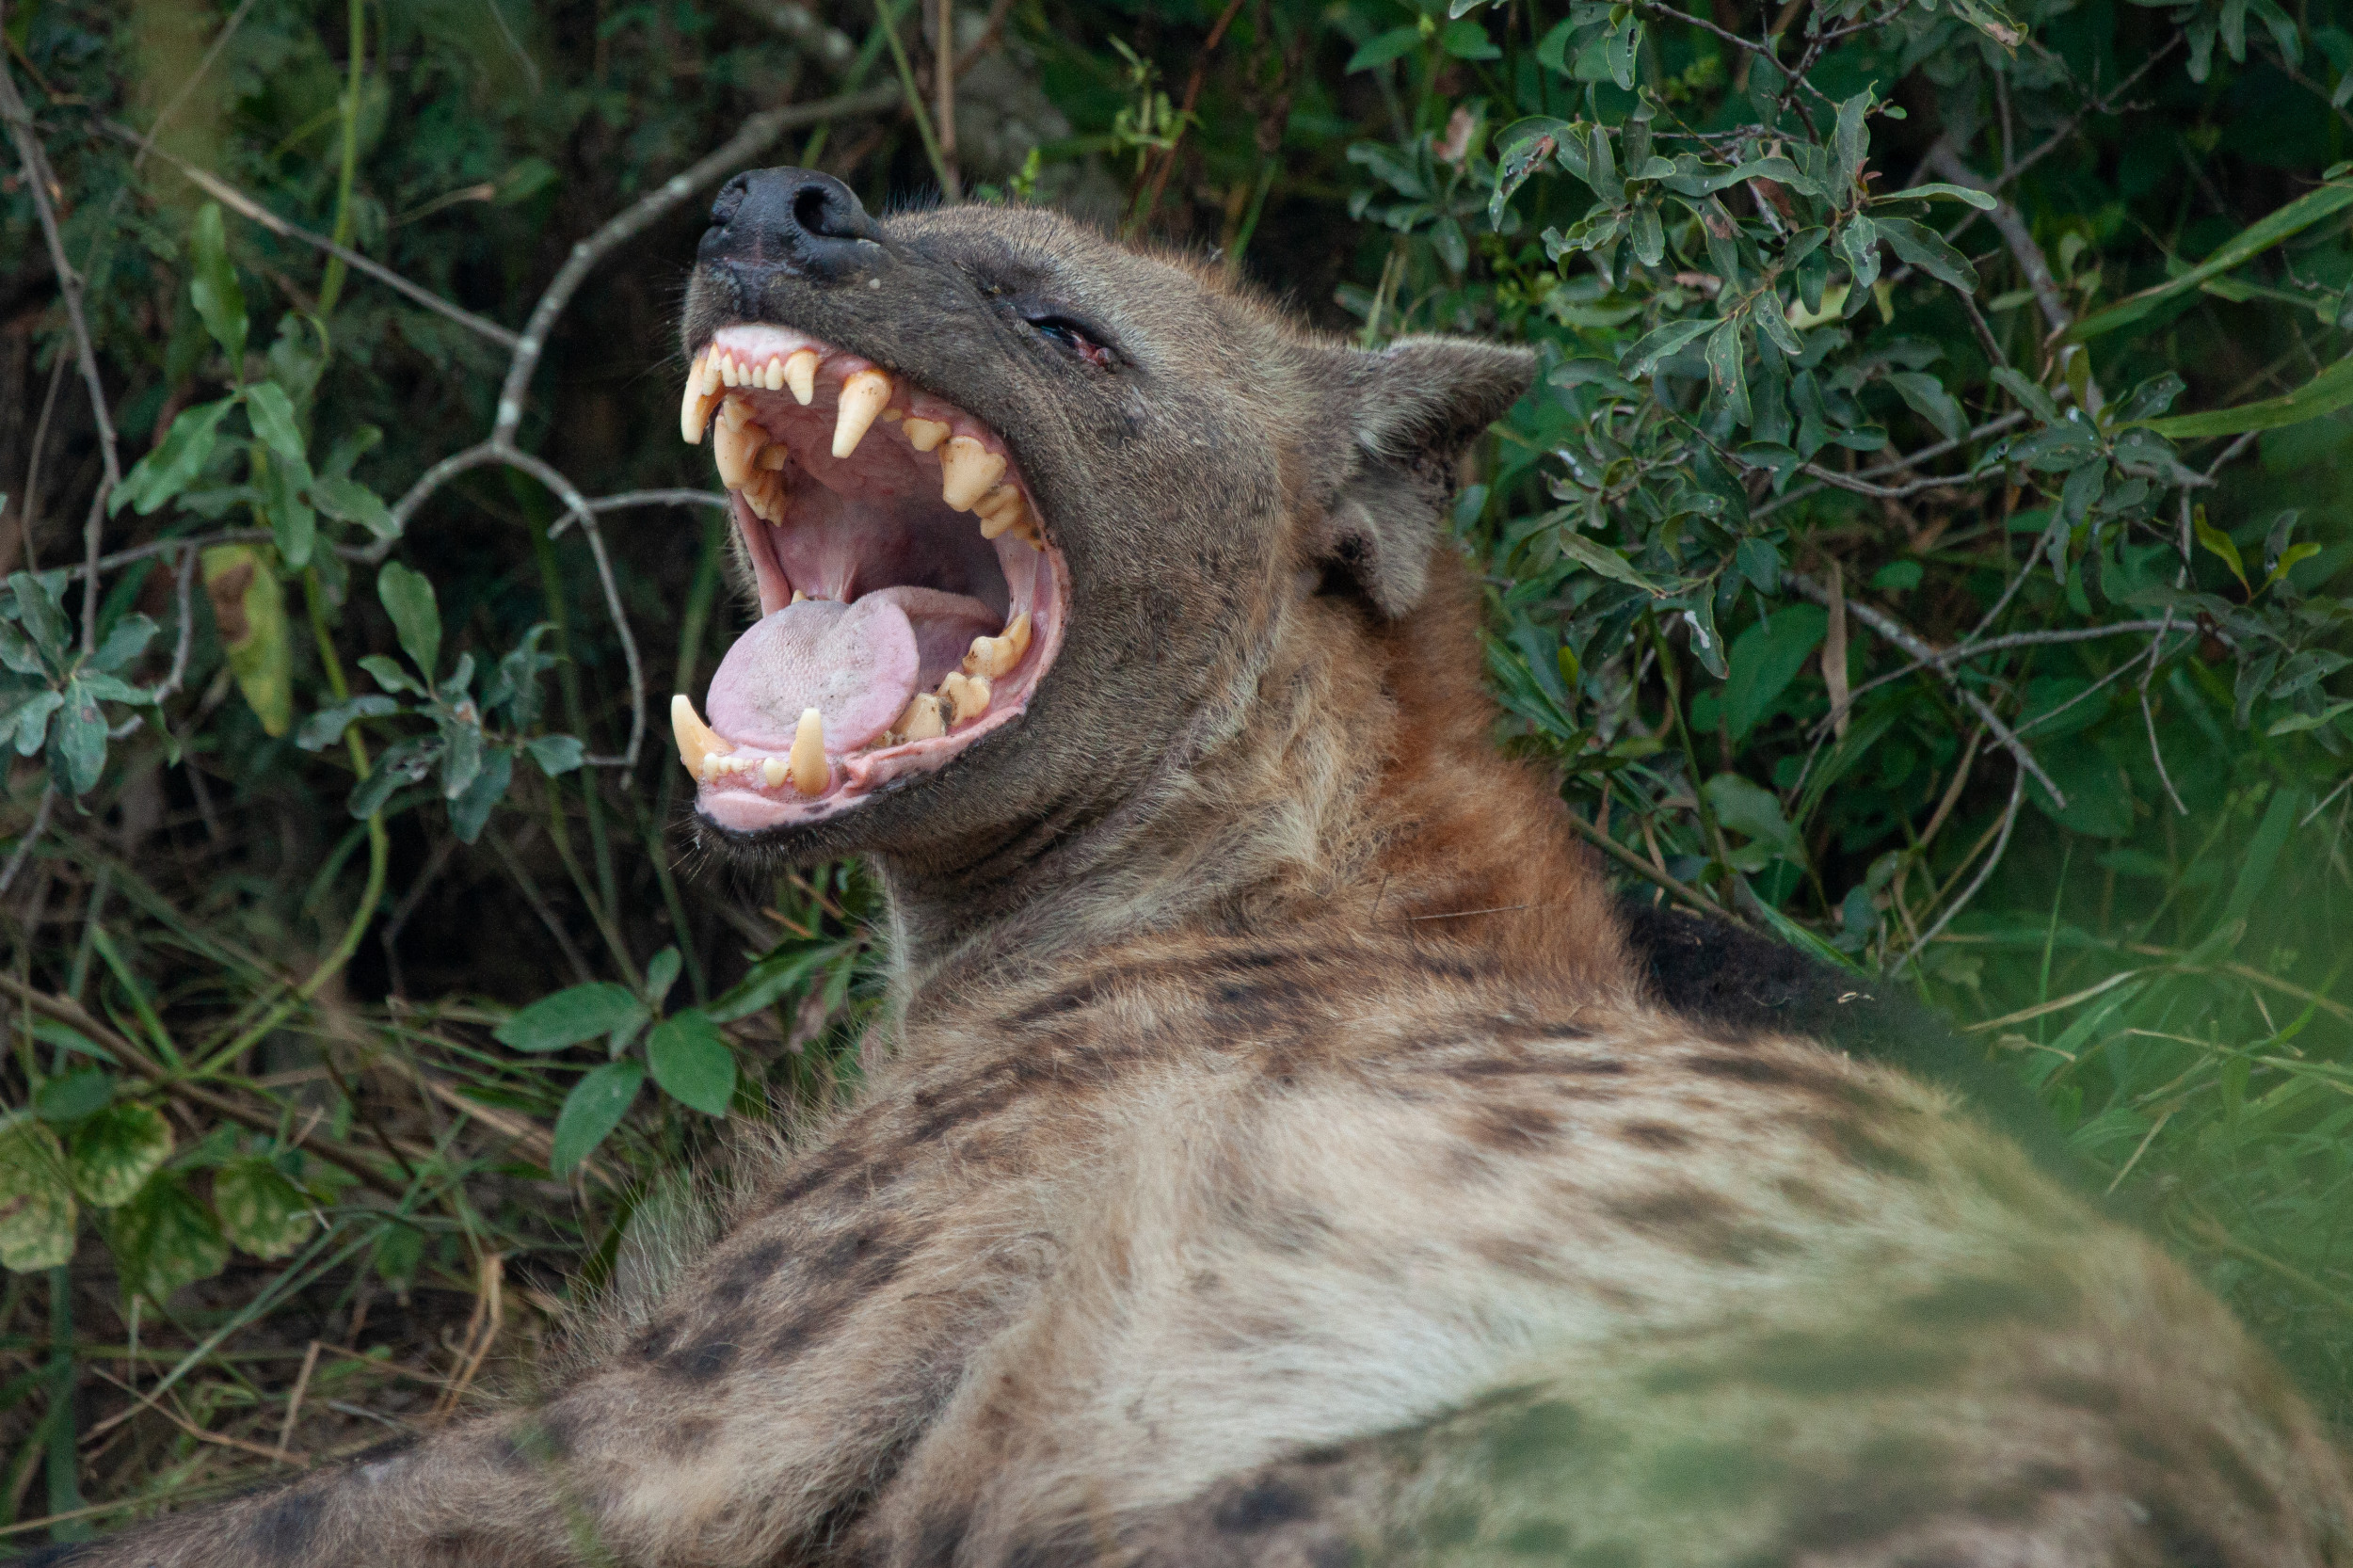 hyena animal smiling